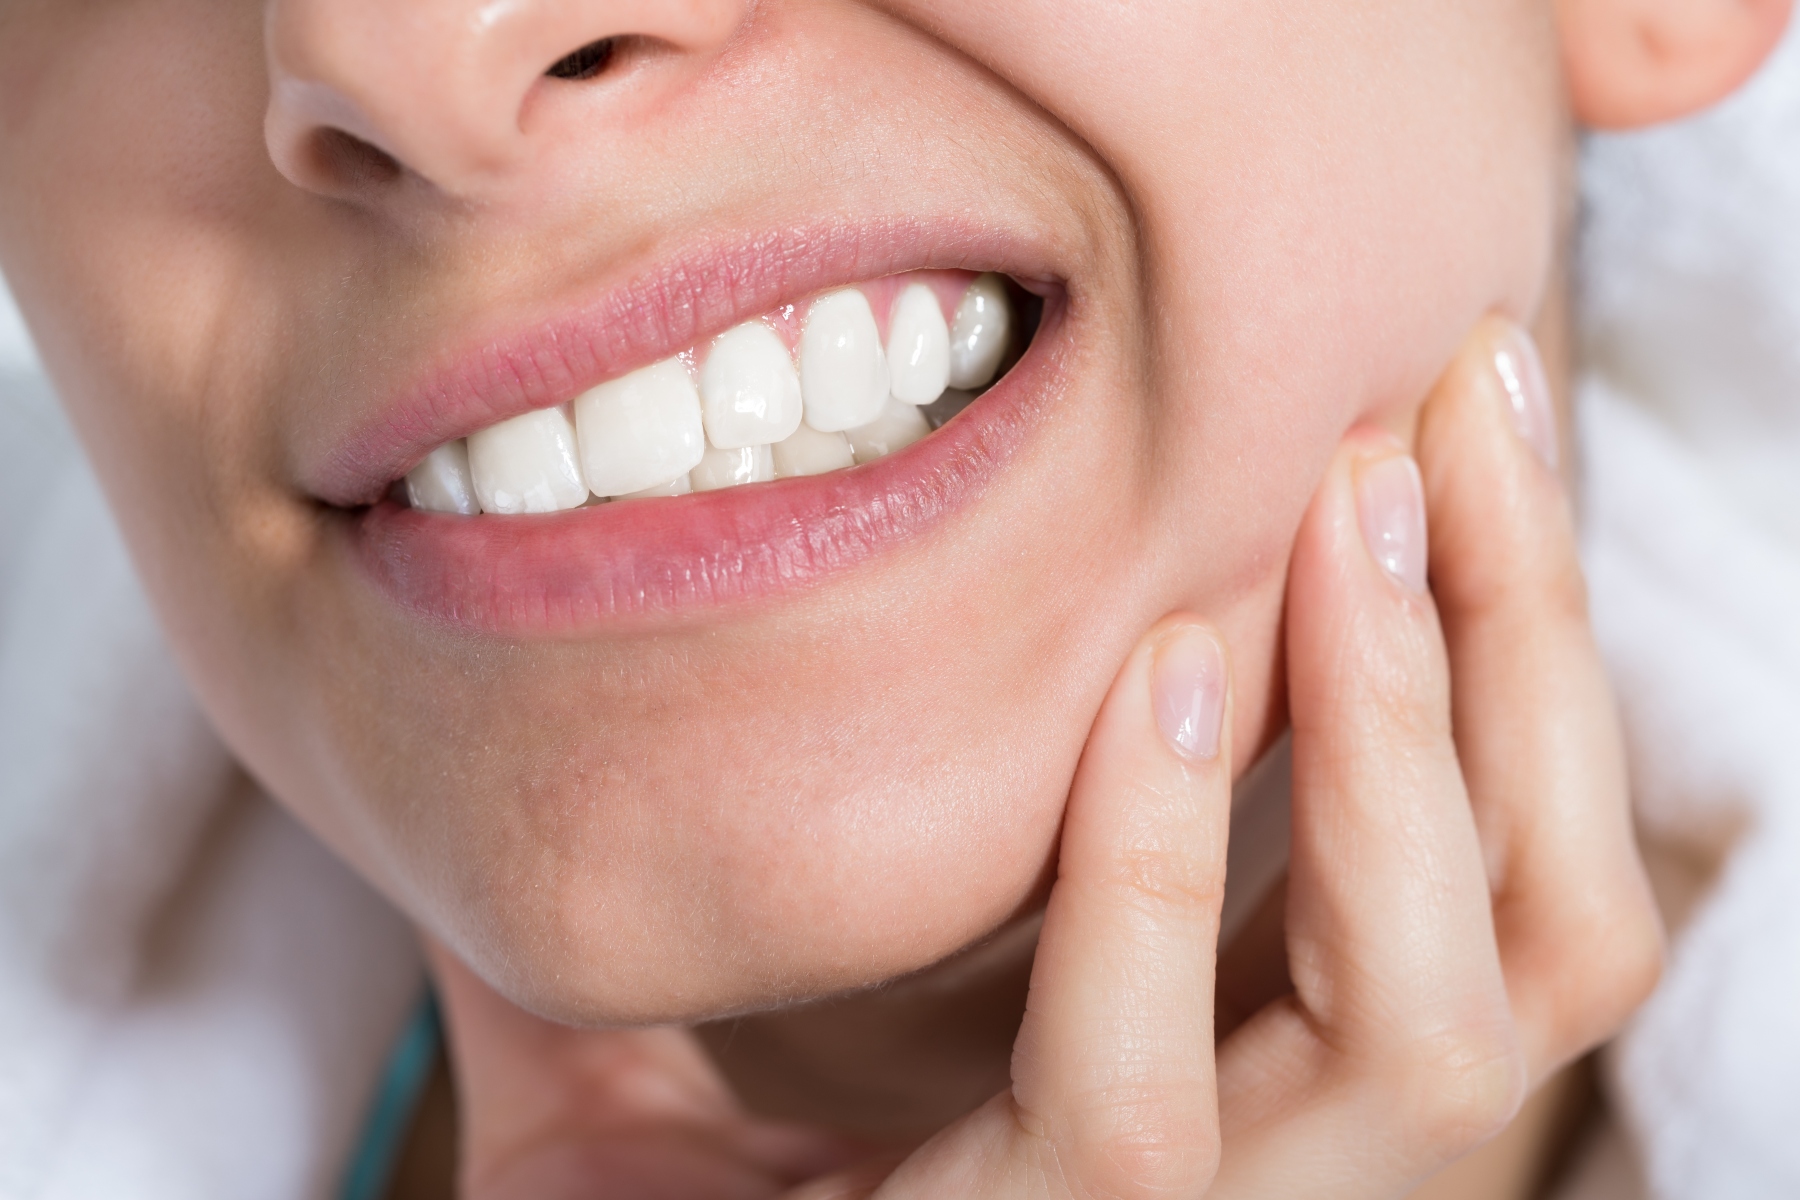 Υγεία δοντιών: Ποια είναι τα πιο κοινά προβλήματα υγείας των δοντιών;